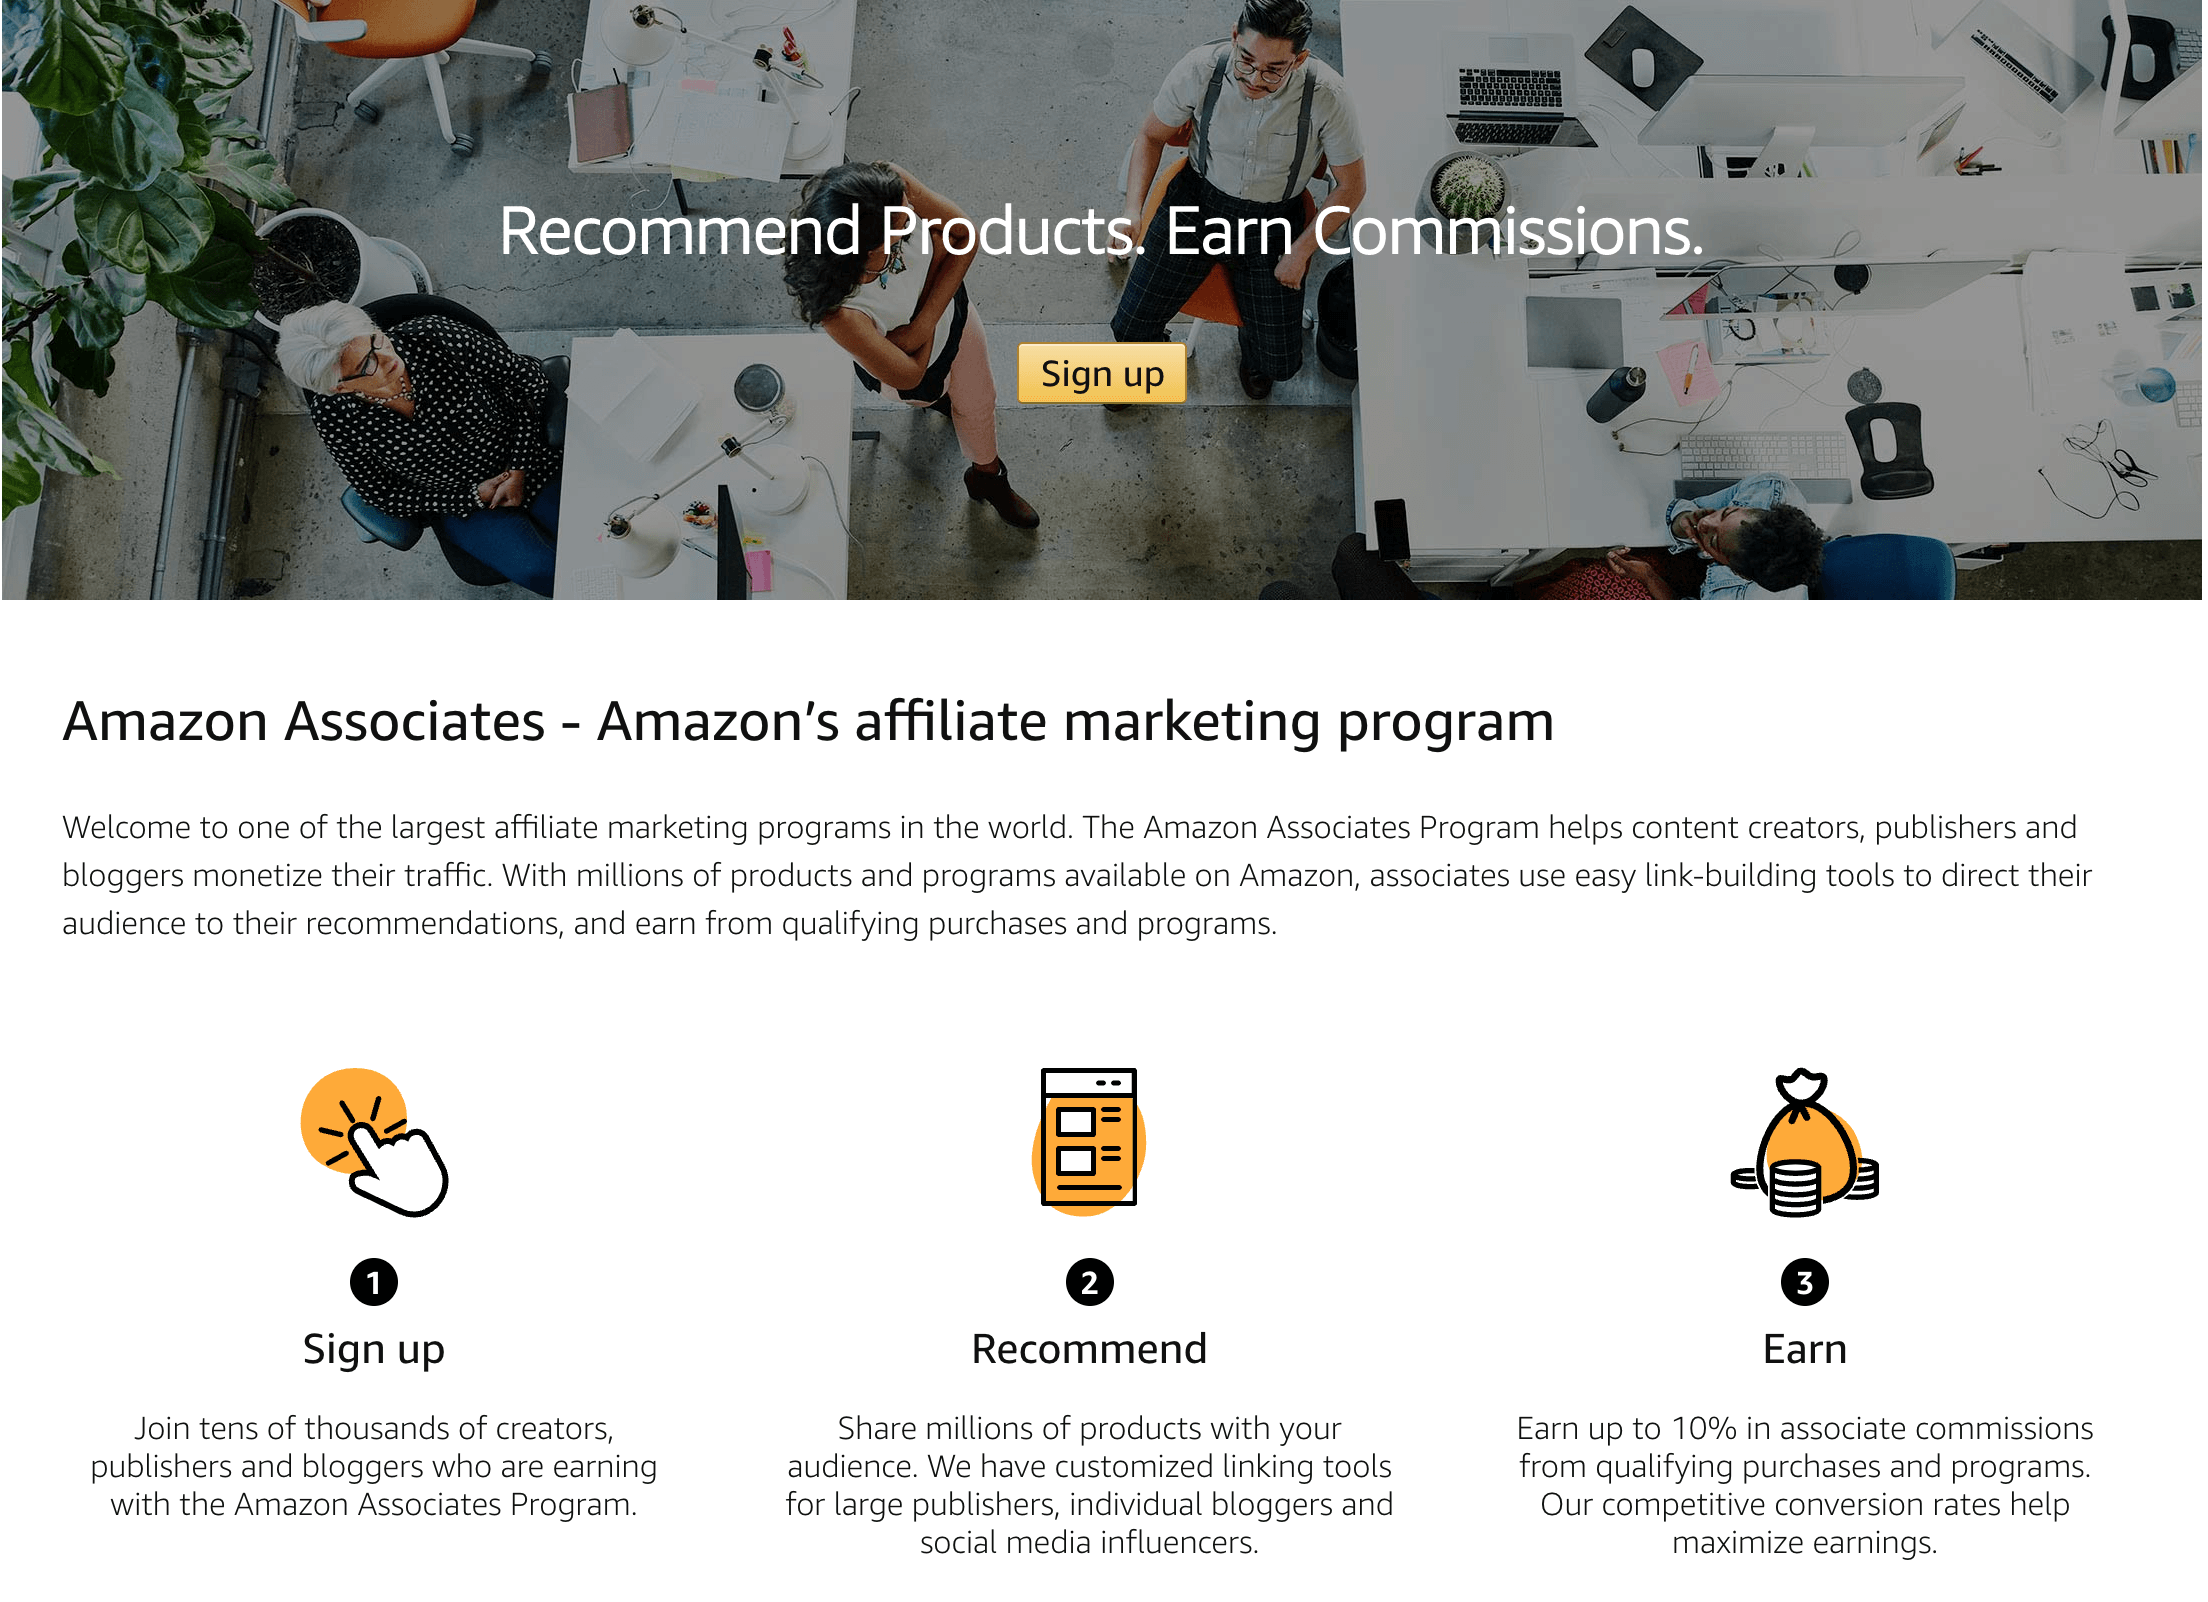 Amazon Associates' homepage